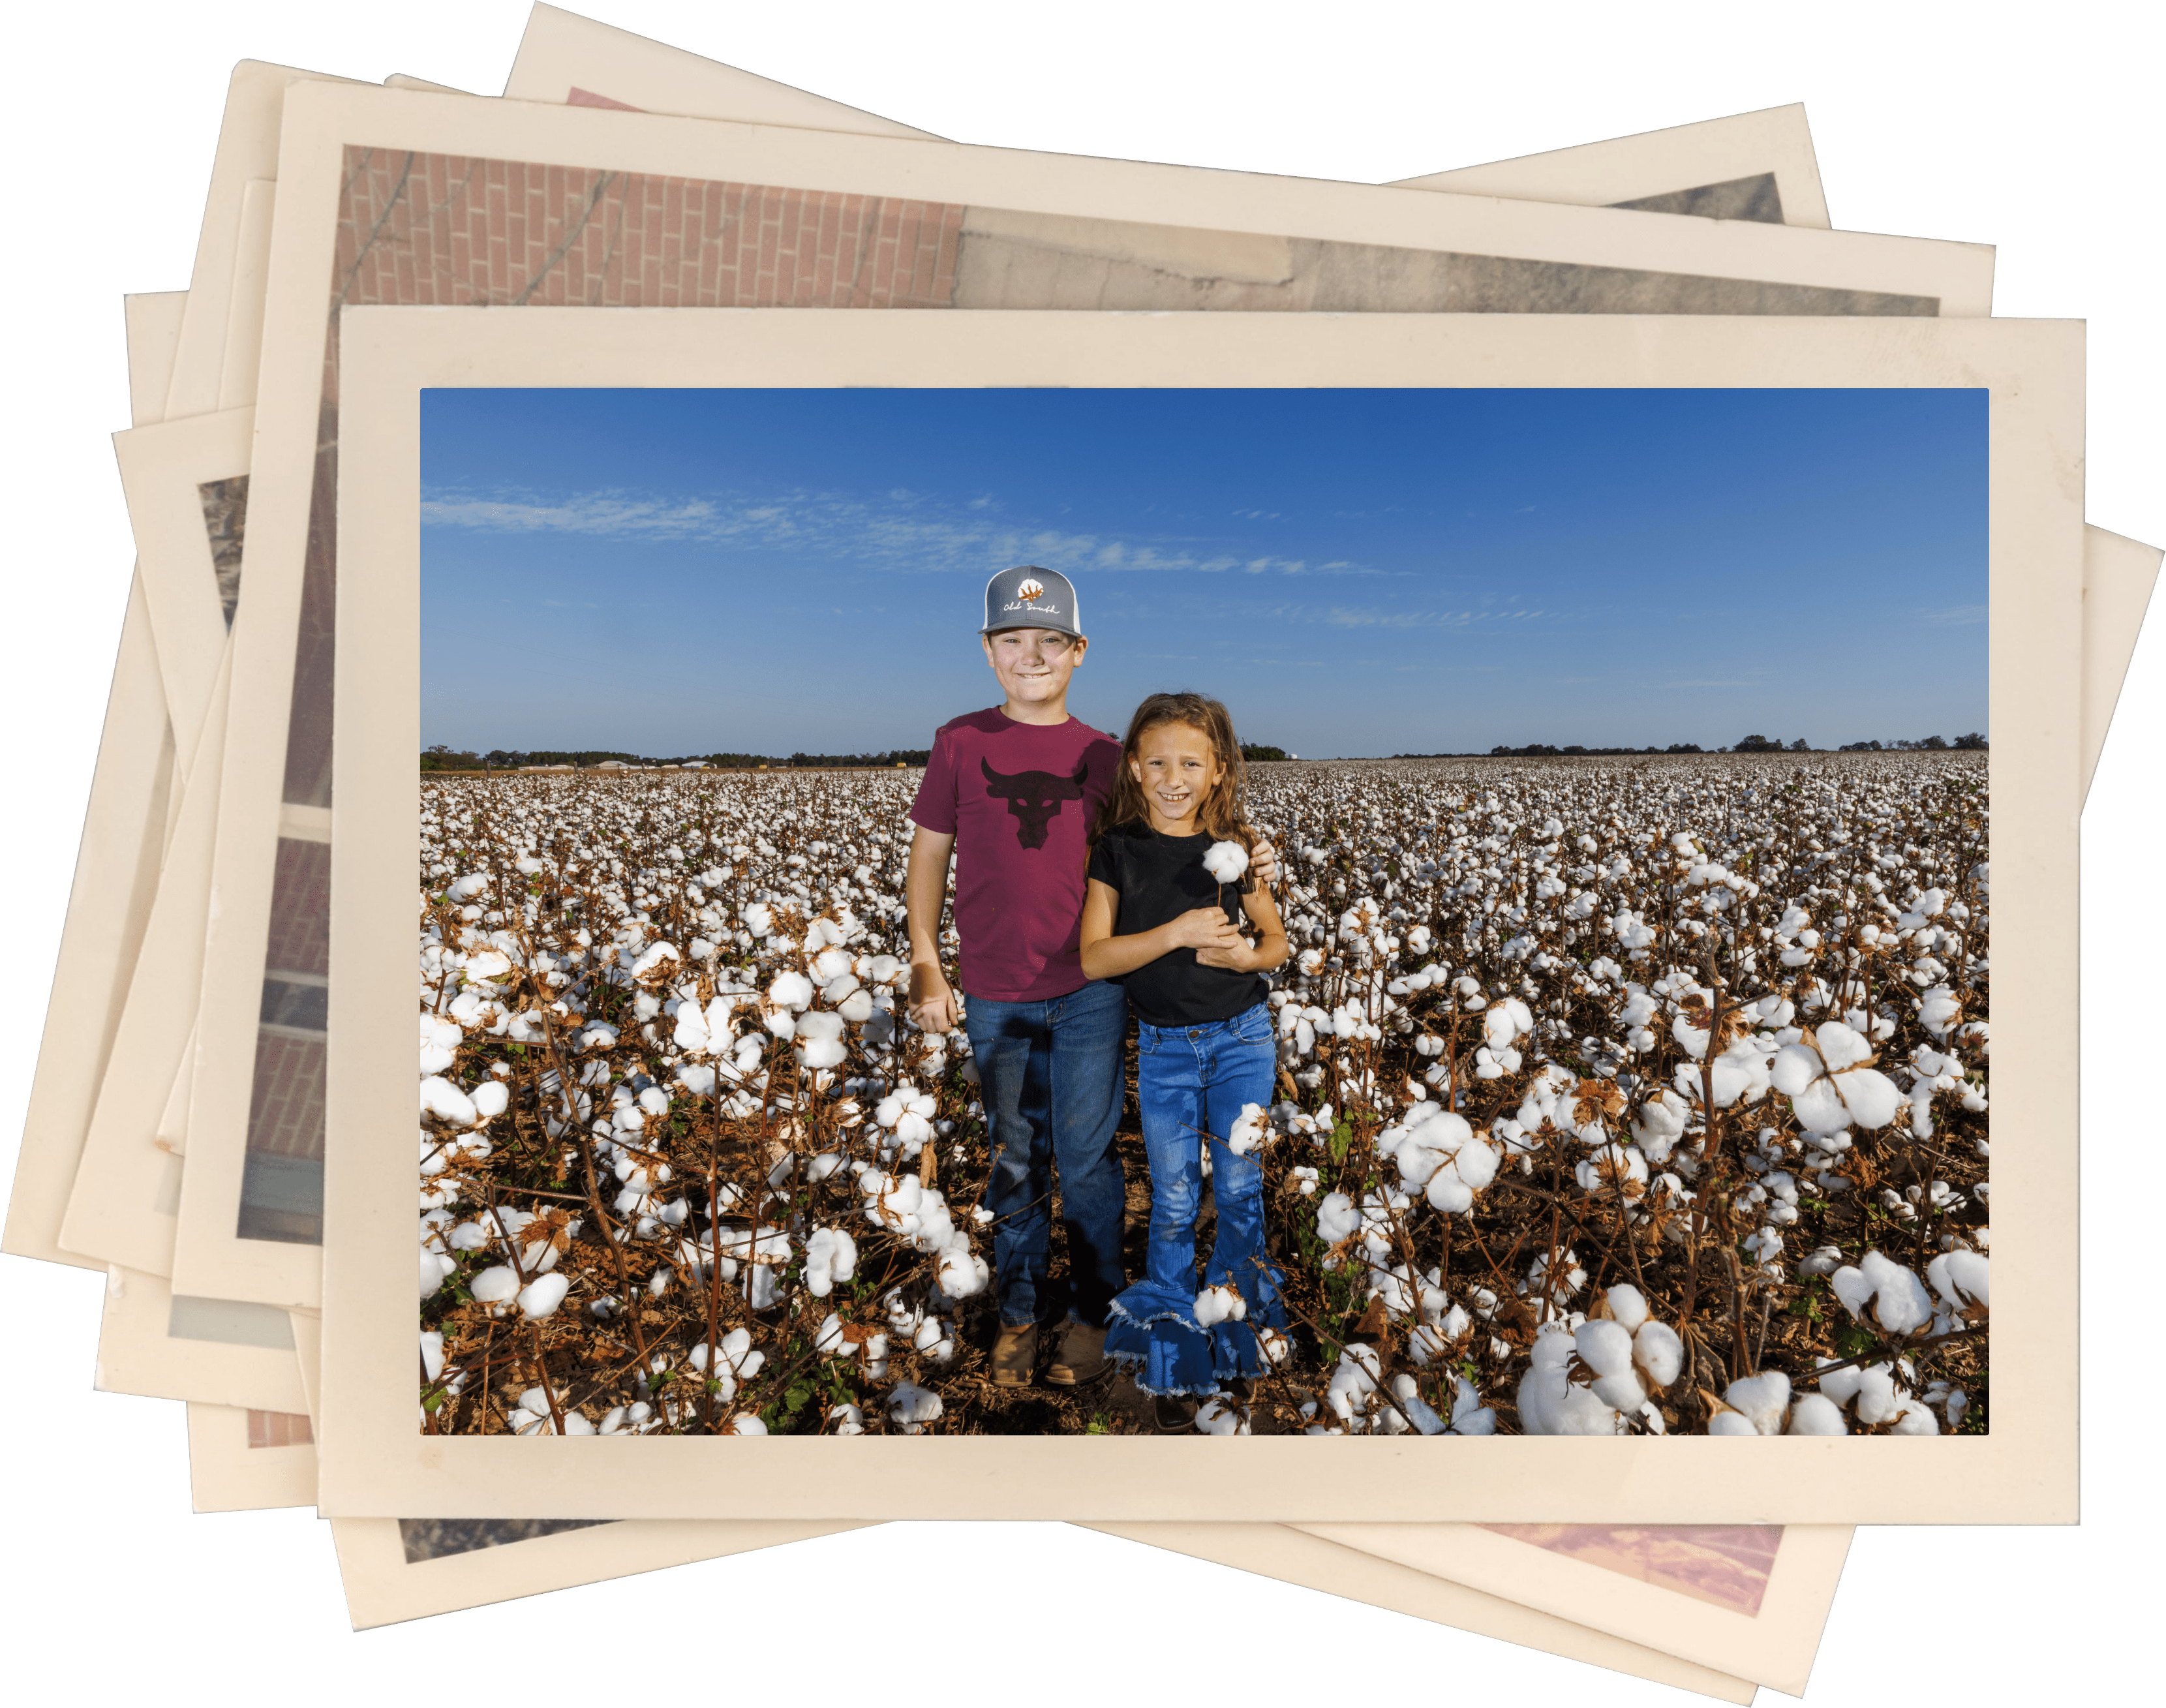 Building trust for U.S. Cotton